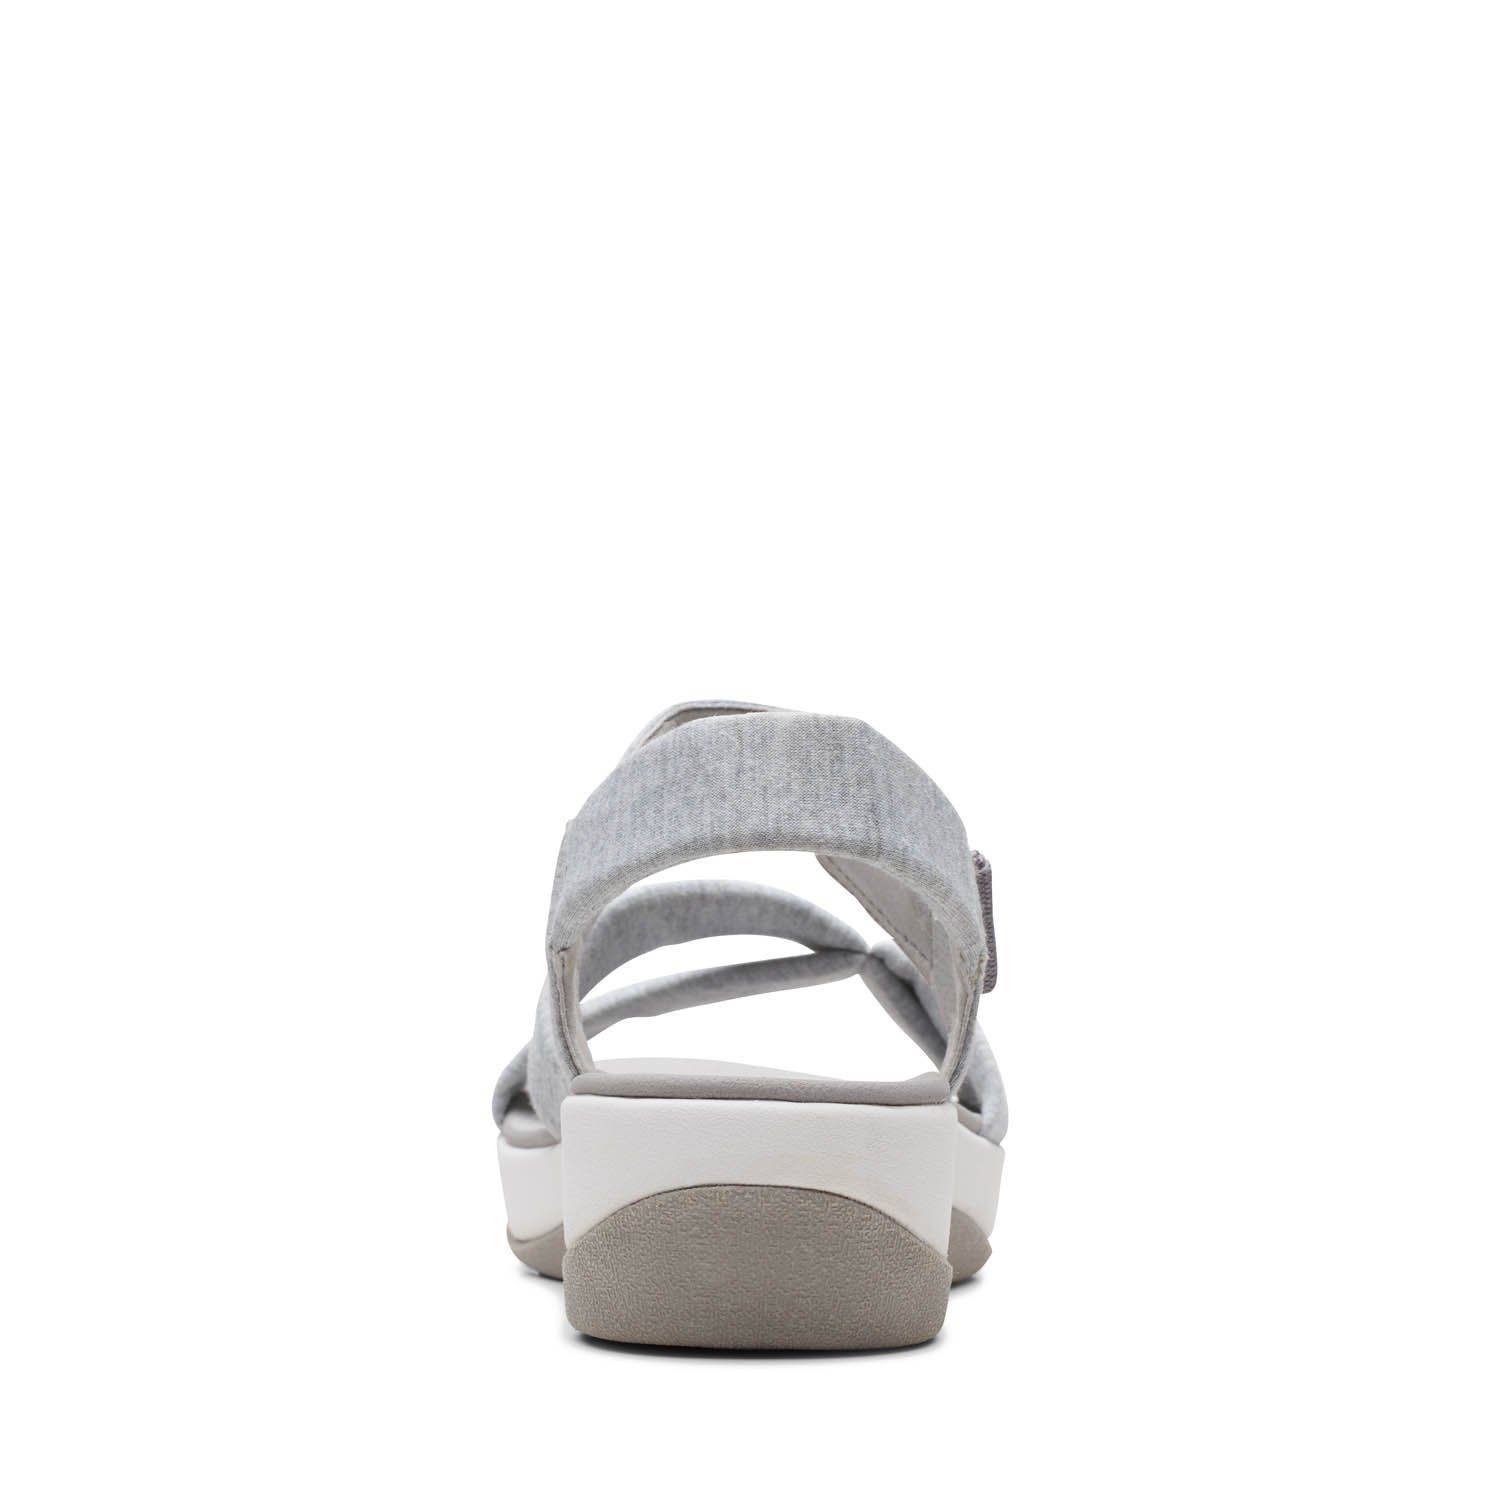 Женские сандалии Clarks (Arla Gracie 26159204), серые, цвет серый, размер 36 - фото 6